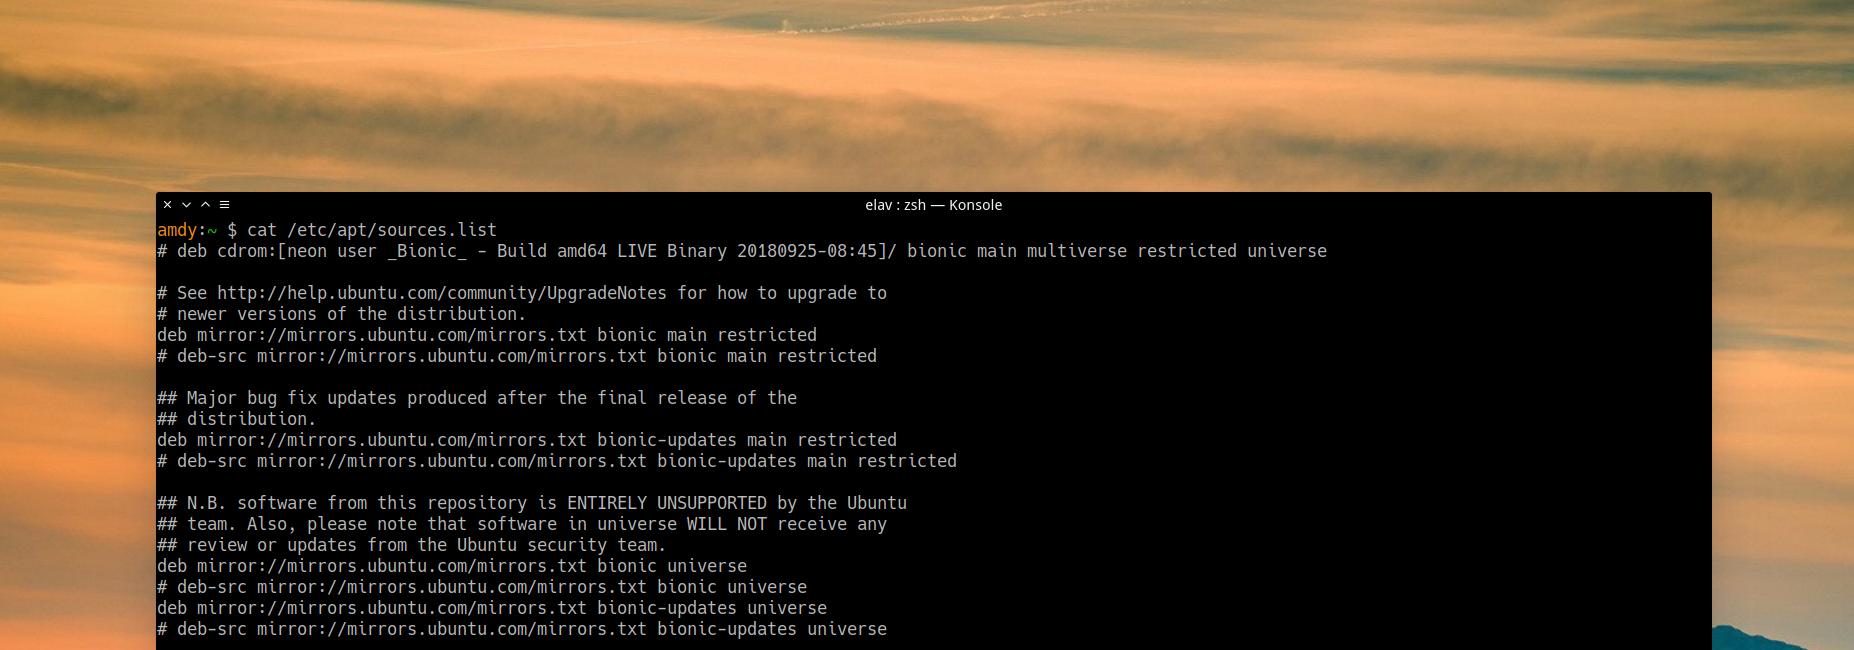 ¿Repositorios lentos en Ubuntu? Aquí la solución